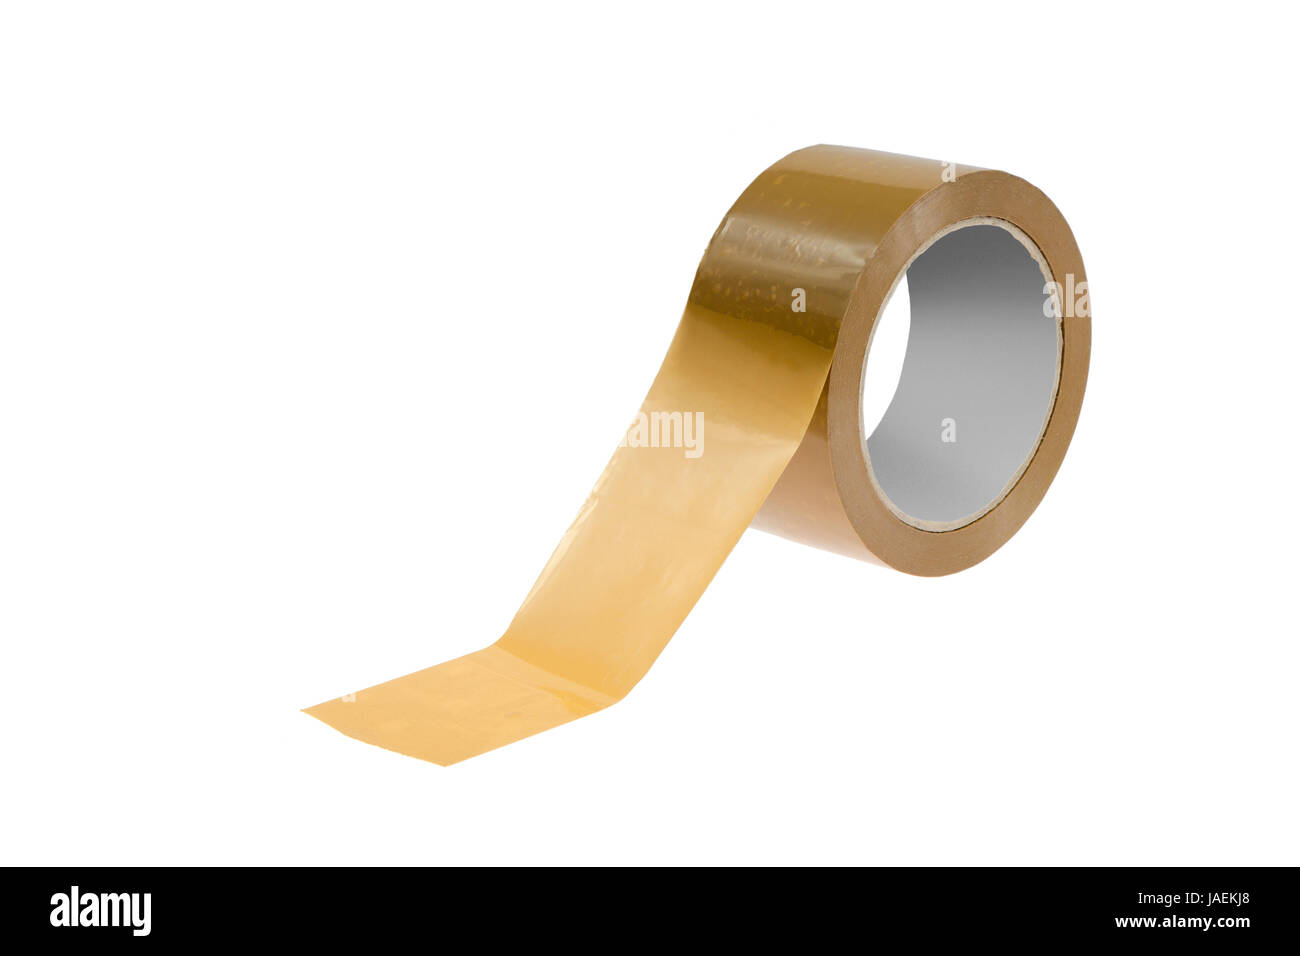 Eine Rolle braunes Klebeband freigestellt auf weißem Hiuntergrund - A roll of brown sticky tape isolated on white background Stock Photo